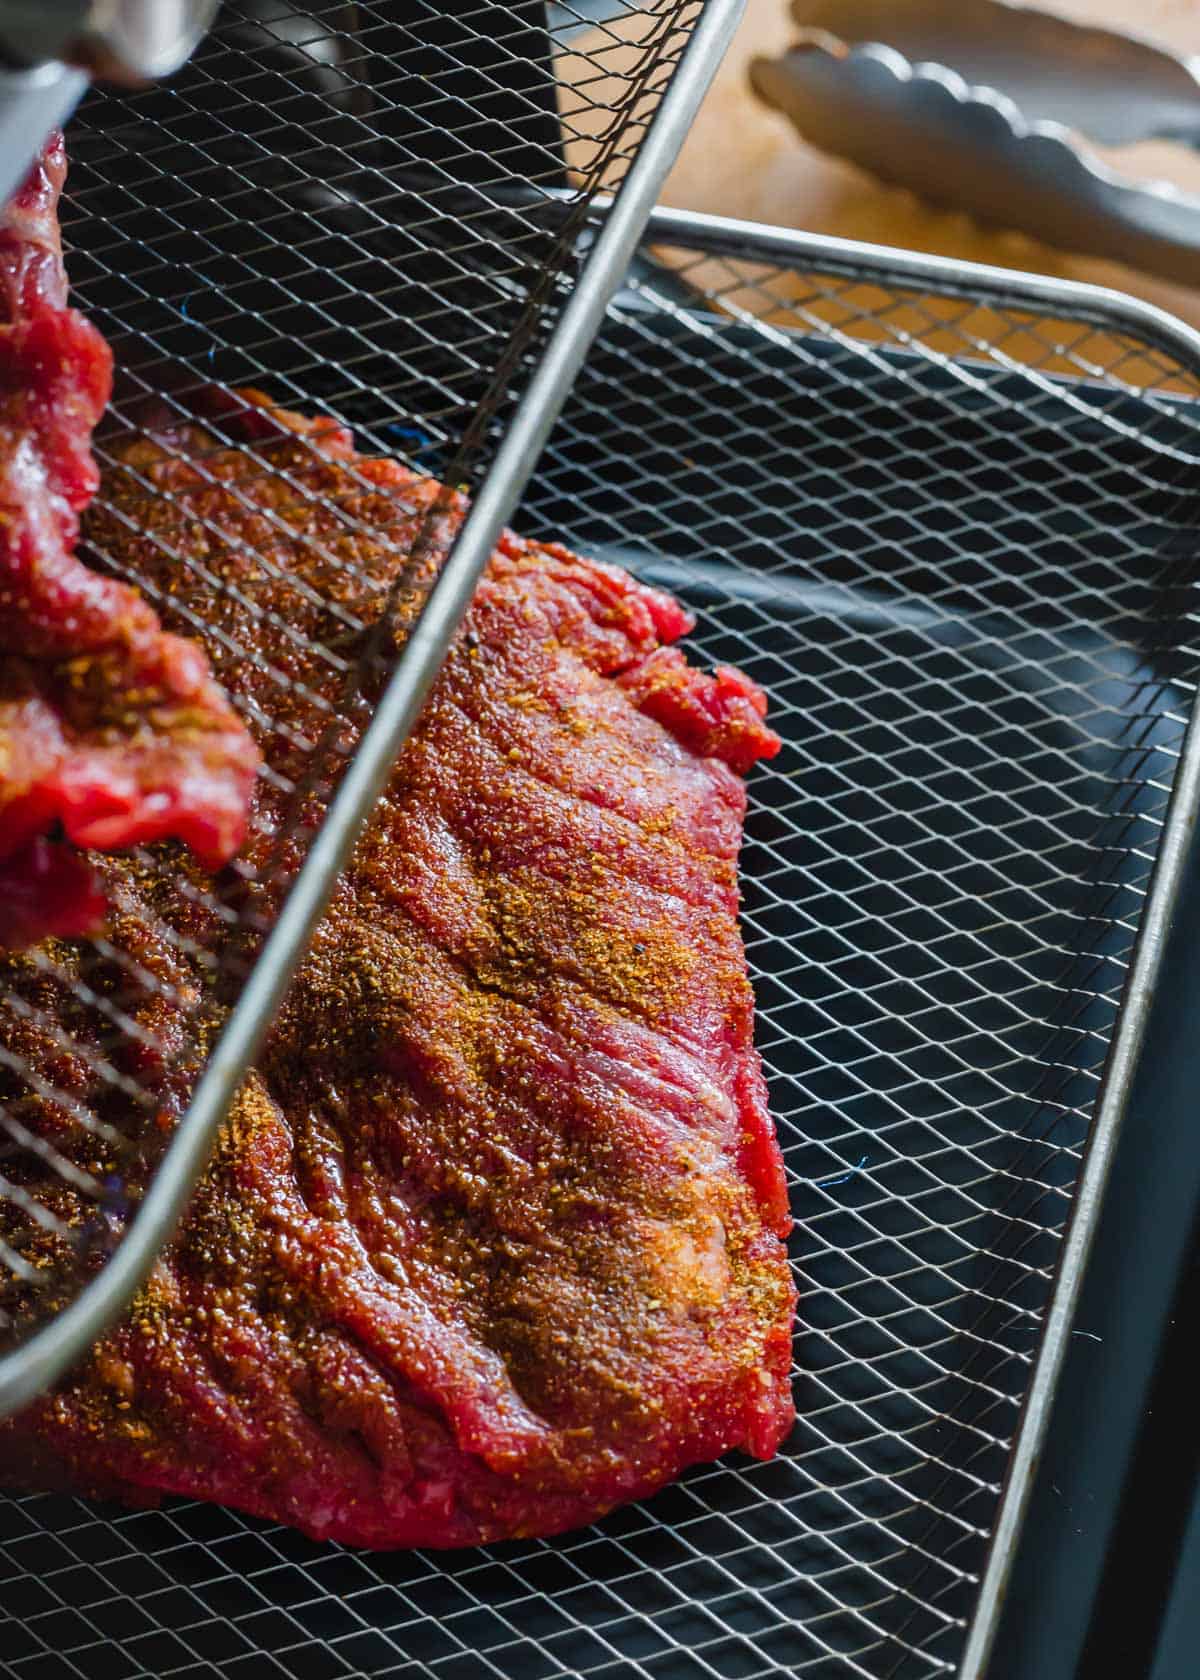 Seasoned skirt steak on trays in an air fryer oven.